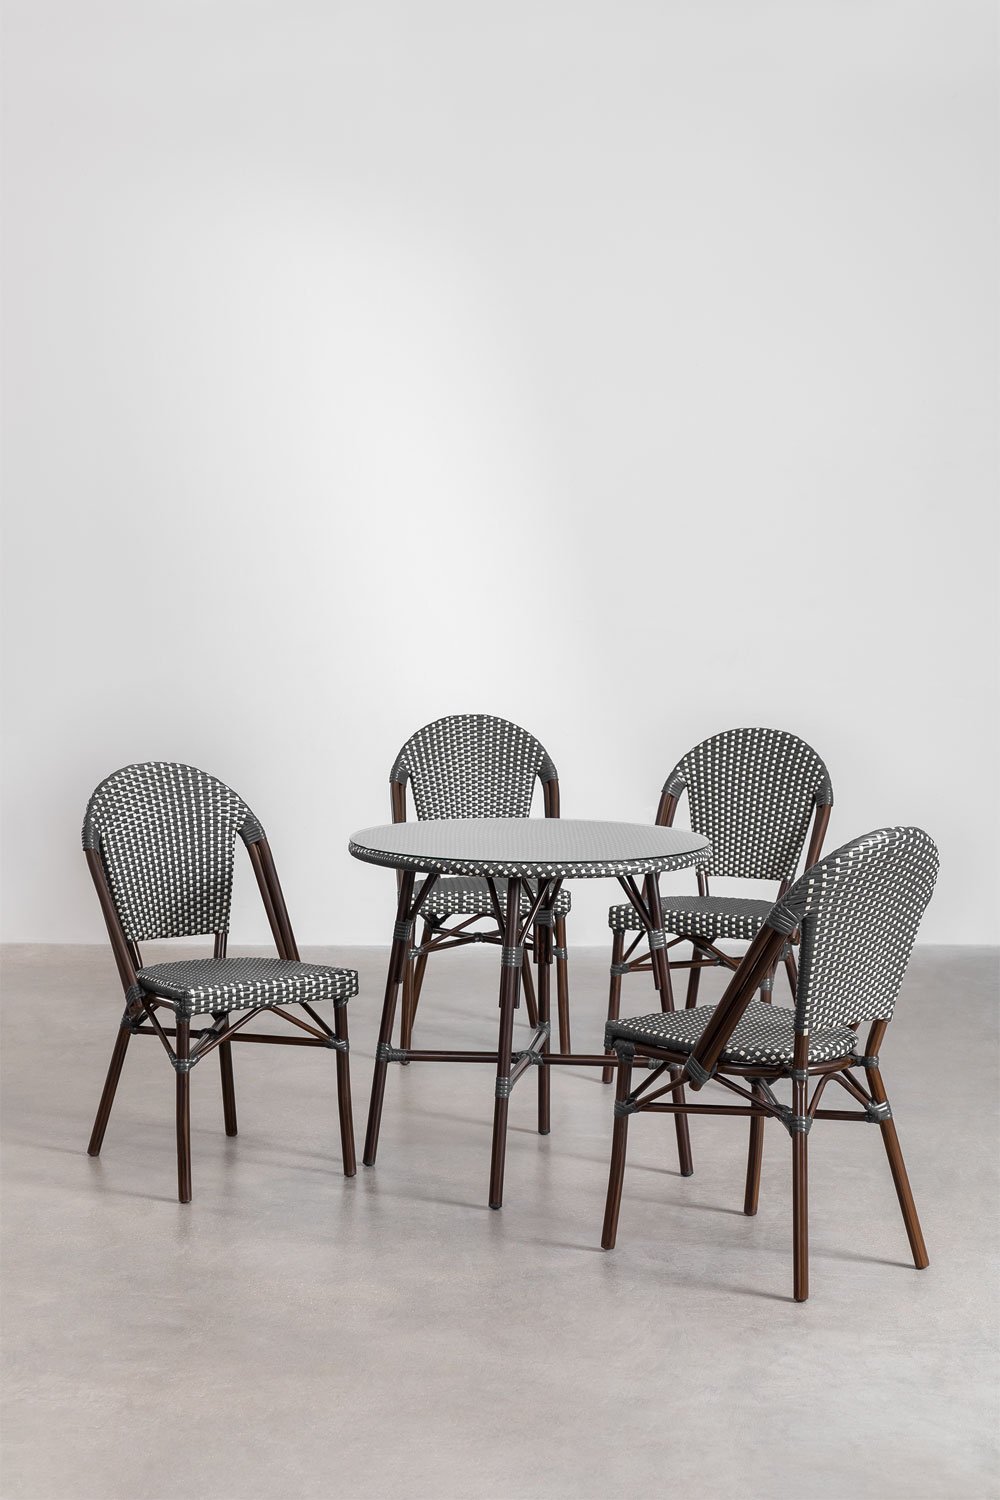 Set van ronde tafel (Ø80 cm) en 4 stapelbare eetkamerstoelen in aluminium en synthetisch rotan Brielle Bistro, galerij beeld 1